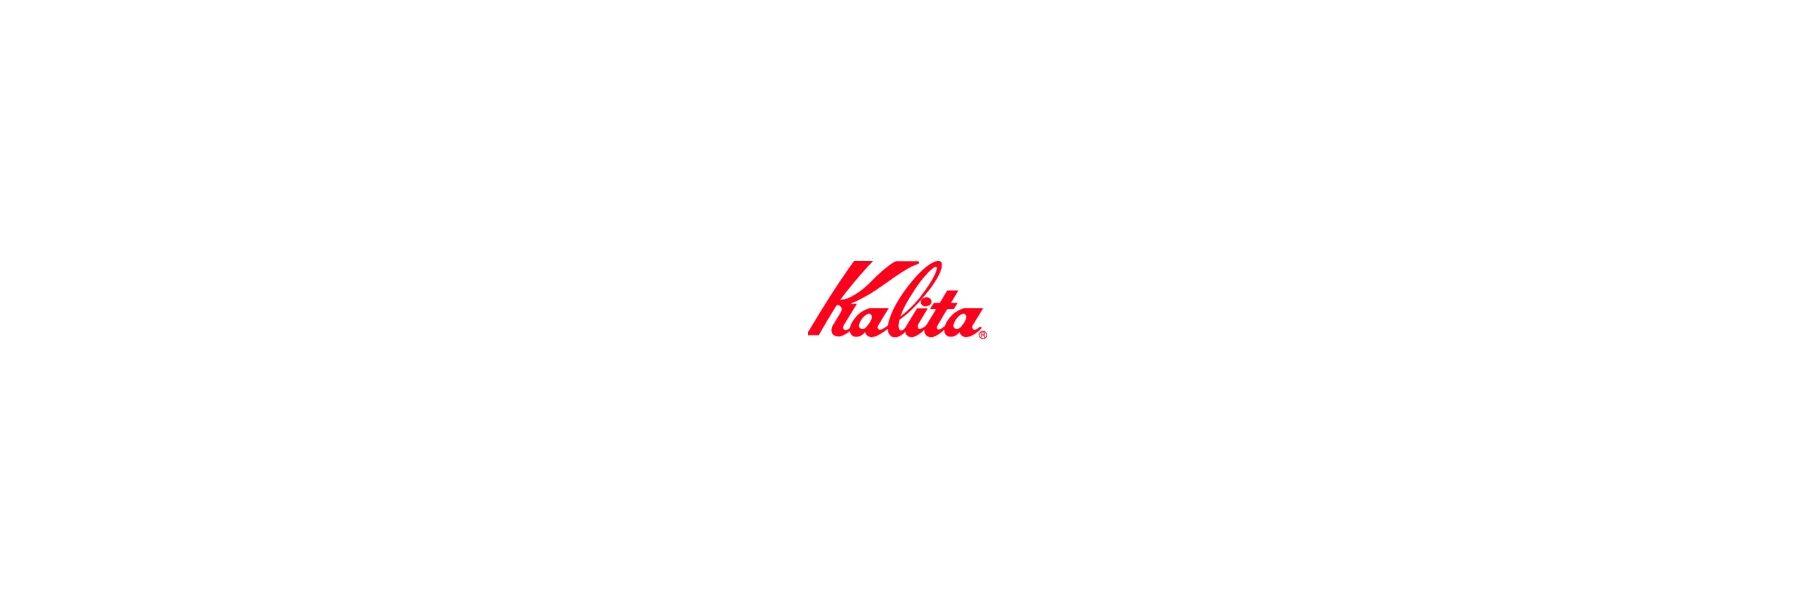 Kalita ist ein 1958 gegründetes...